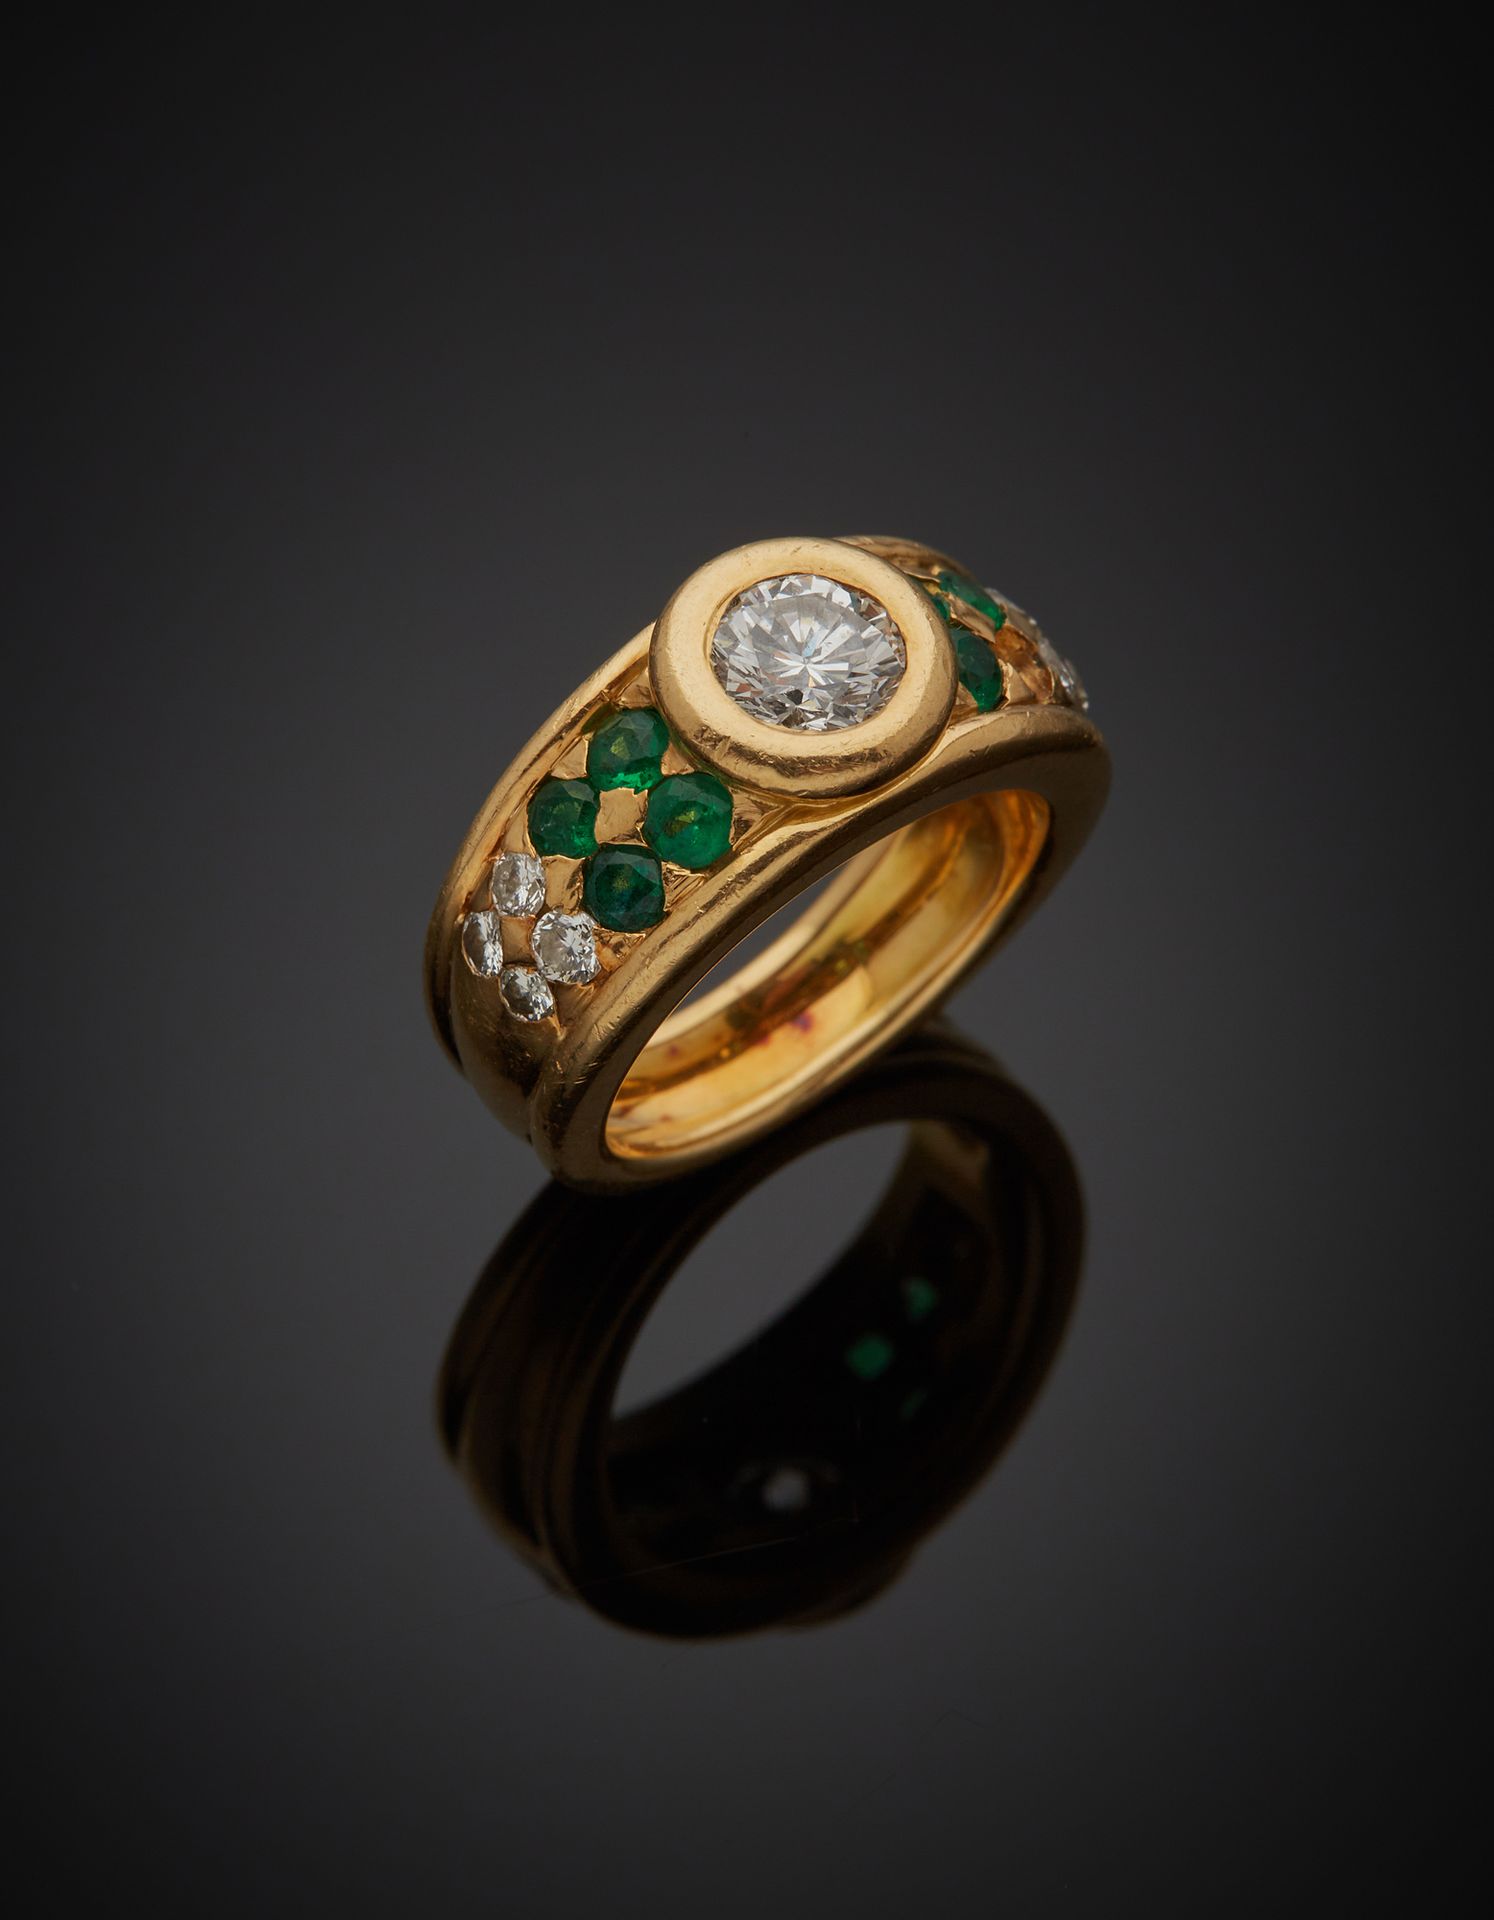 Null 一枚18K黄金750‰的戒指，中央镶嵌着一颗明亮式切割钻石，肩部镶嵌着绿色宝石和明亮式切割钻石。缺少一块石头，有碎裂和破损的石头，有轻微变形。

手指&hellip;